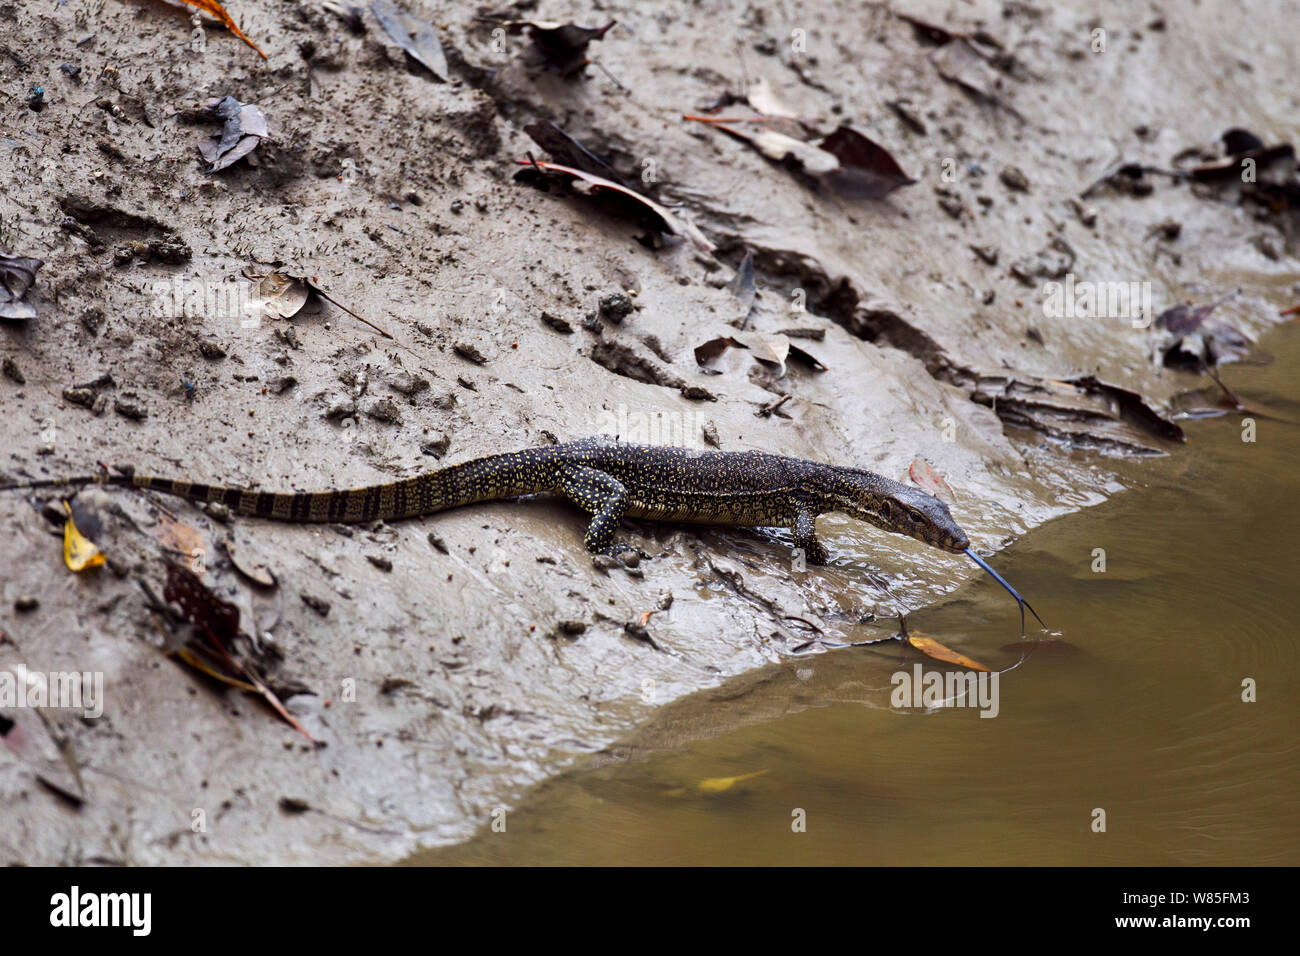 Water monitor lizard juvenile (Varanus salvator). Bako National Park, Sarawak, Borneo, Malaysia. Stock Photo